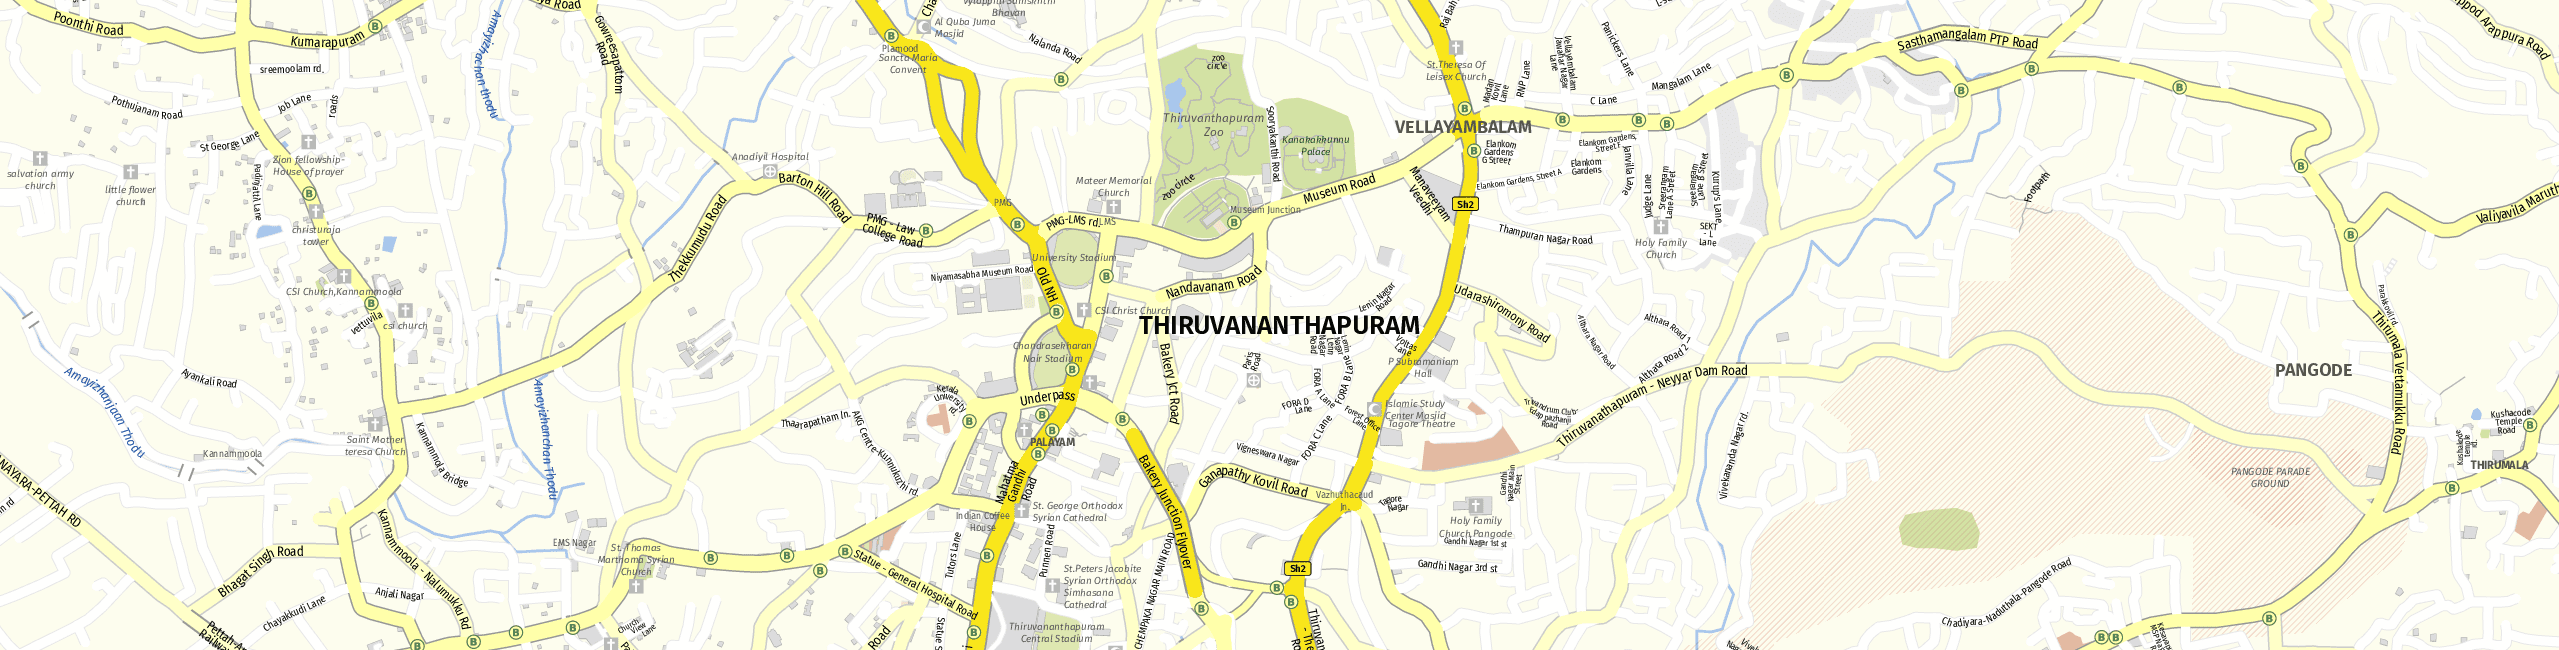 Stadtplan Thiruvananthapuram zum Downloaden.